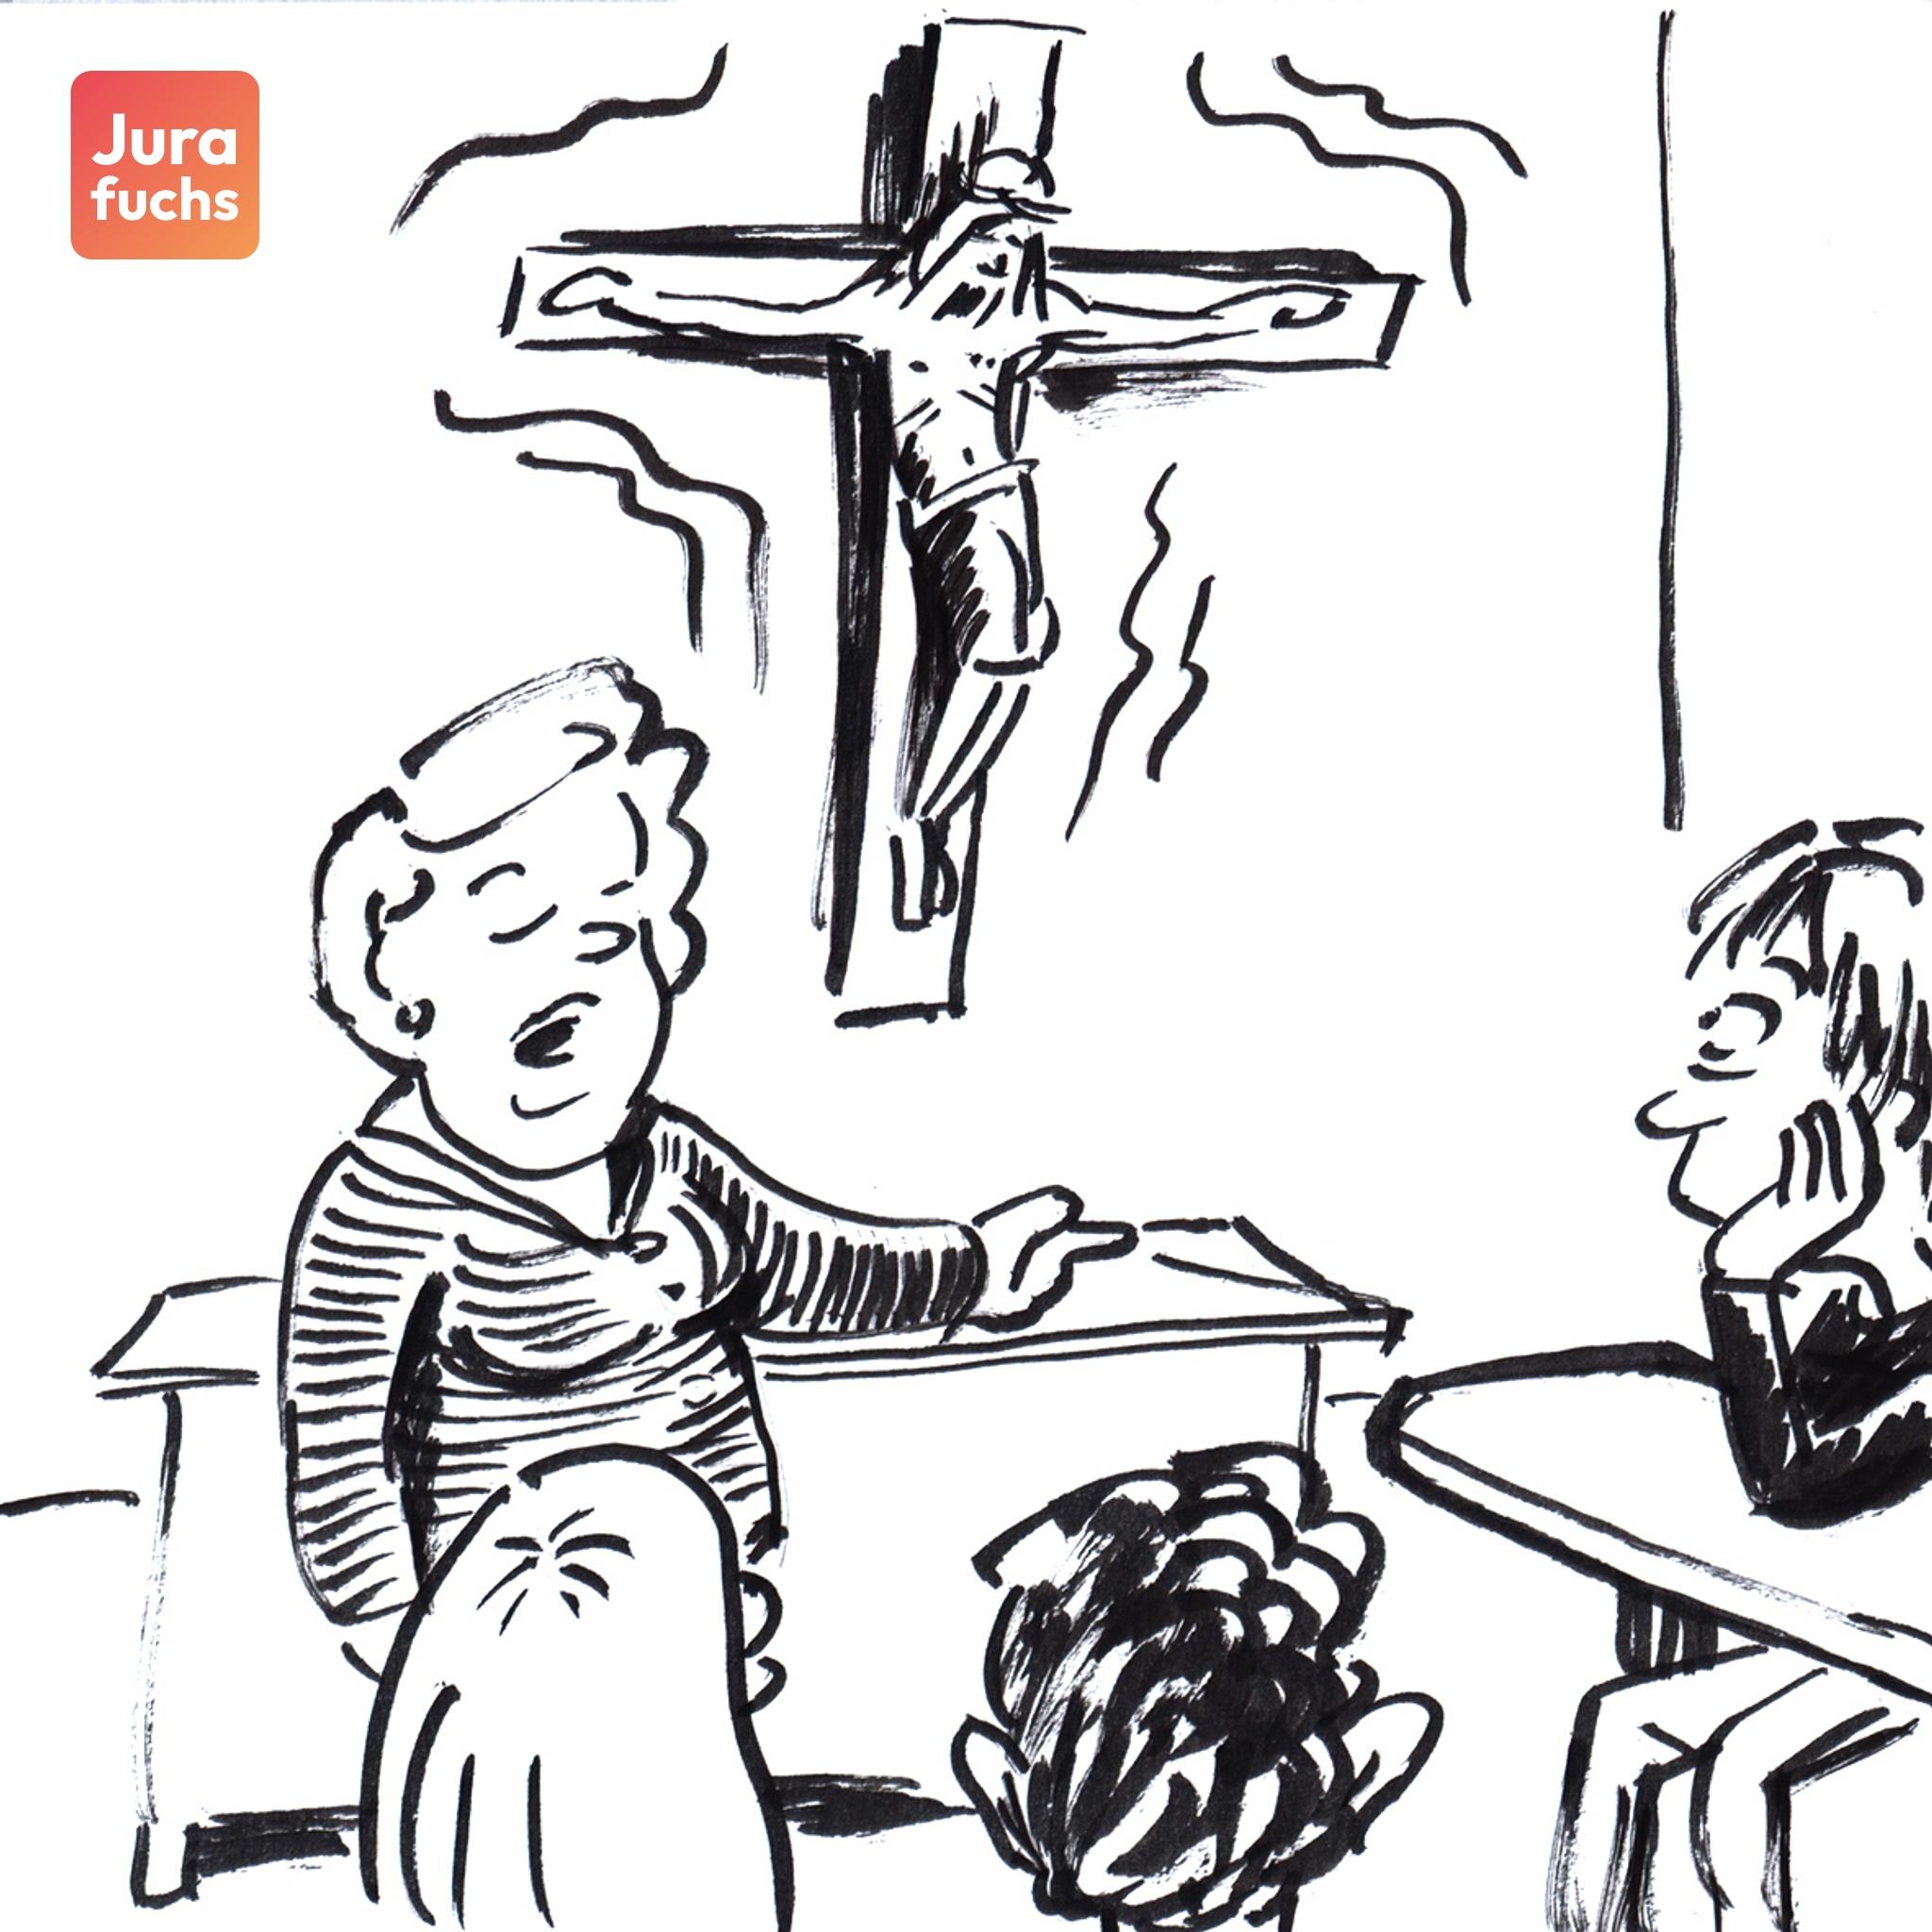 Jurafuchs Illustration zum Kruzifix-Beschluss (BVerfG, Beschl. v. 16.05.1995): In einem Klassenzimmer hängt ein Kreuz an der Wand. Eine Lehrerin lehrt die Kinder, die an den Tischen sitzen.